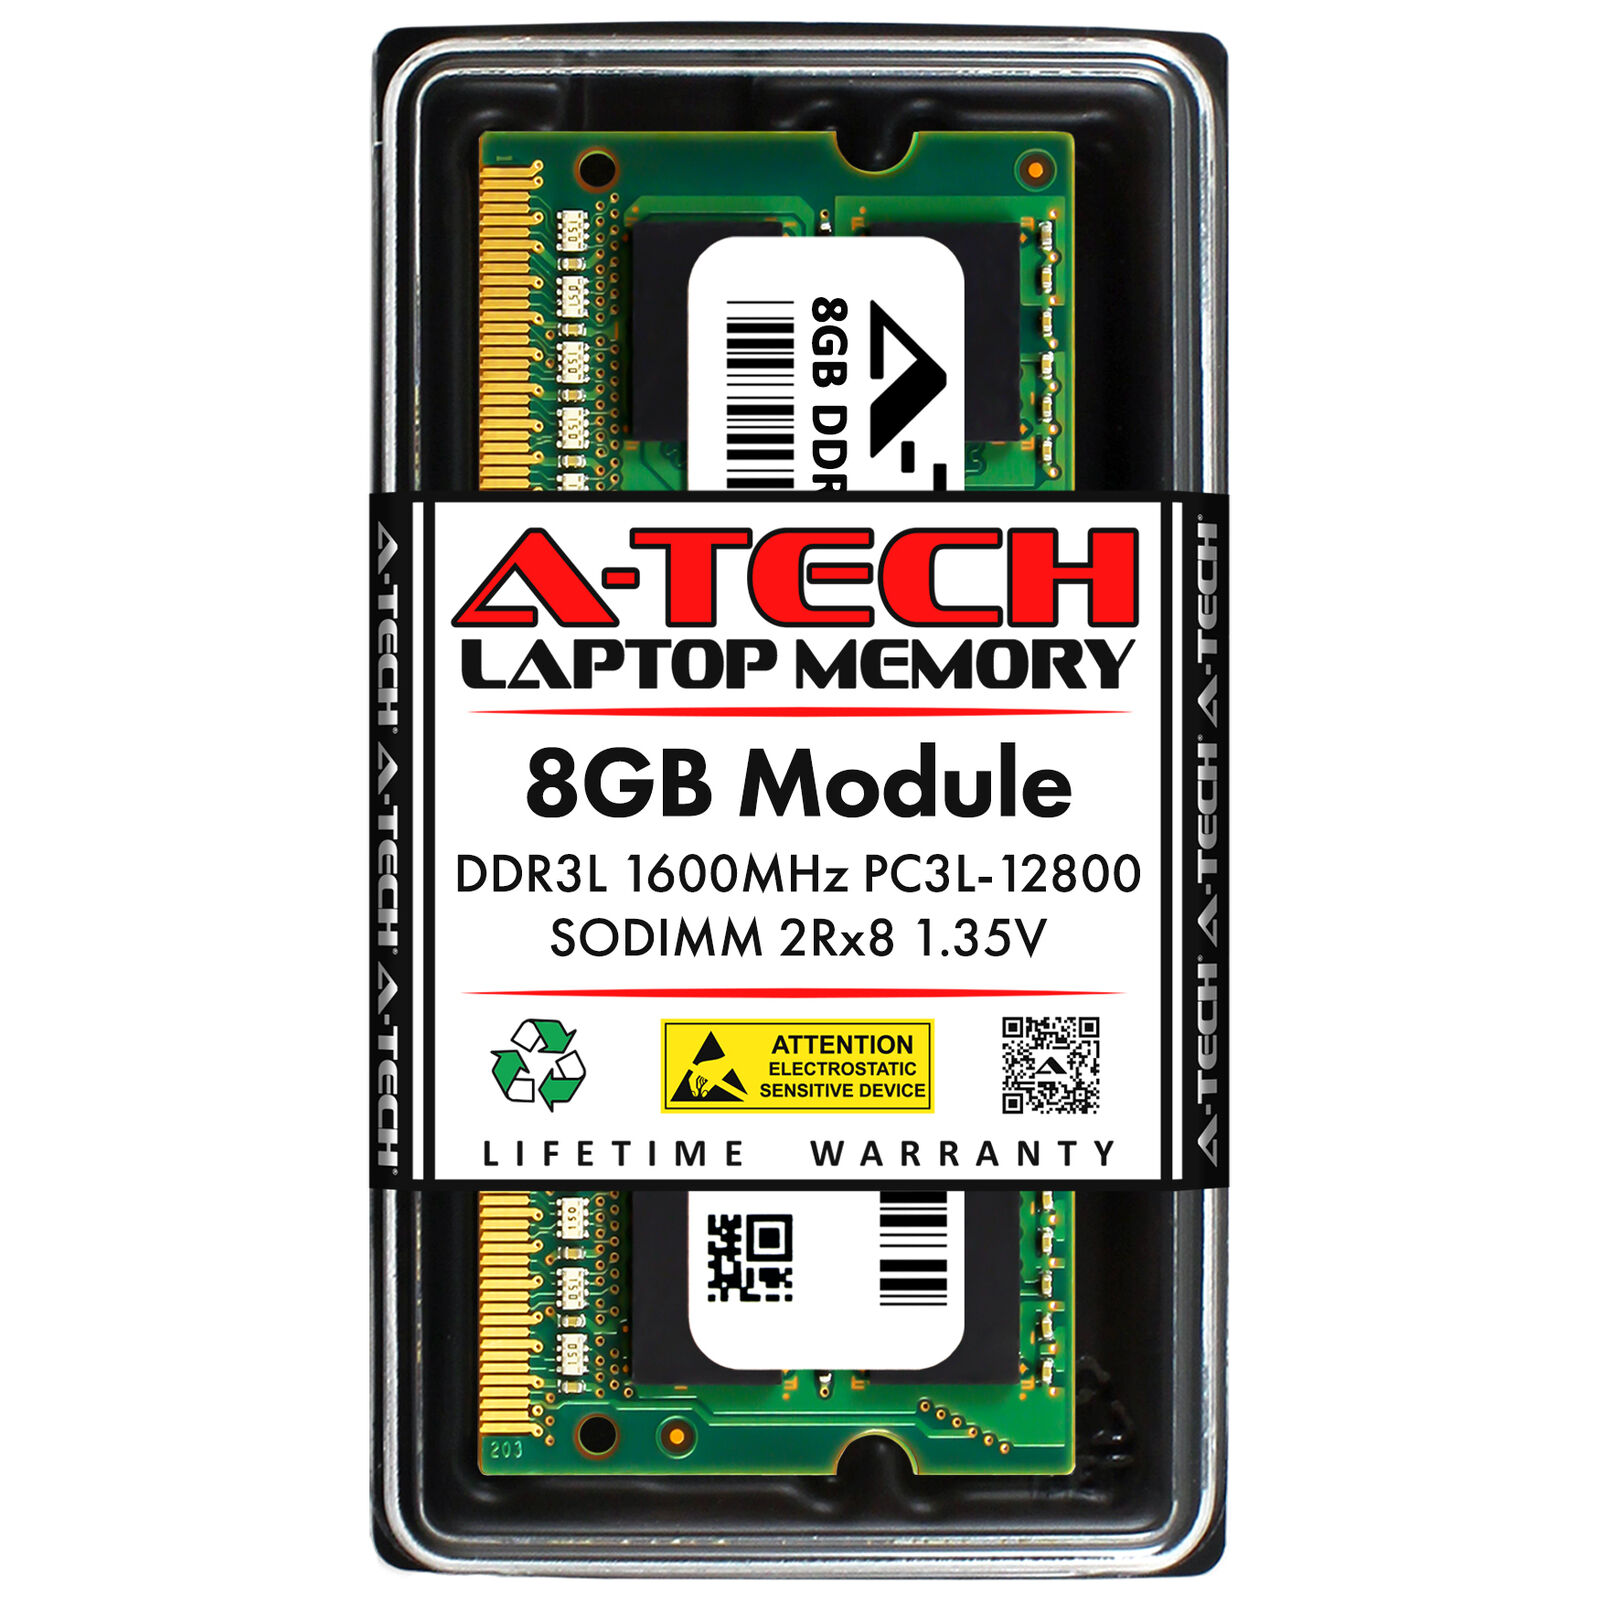 8GB PC3L-12800S ZOTAC ZBOX BI320 CI520 EI750 EN970 MA320 CI320 nano Memory RAM